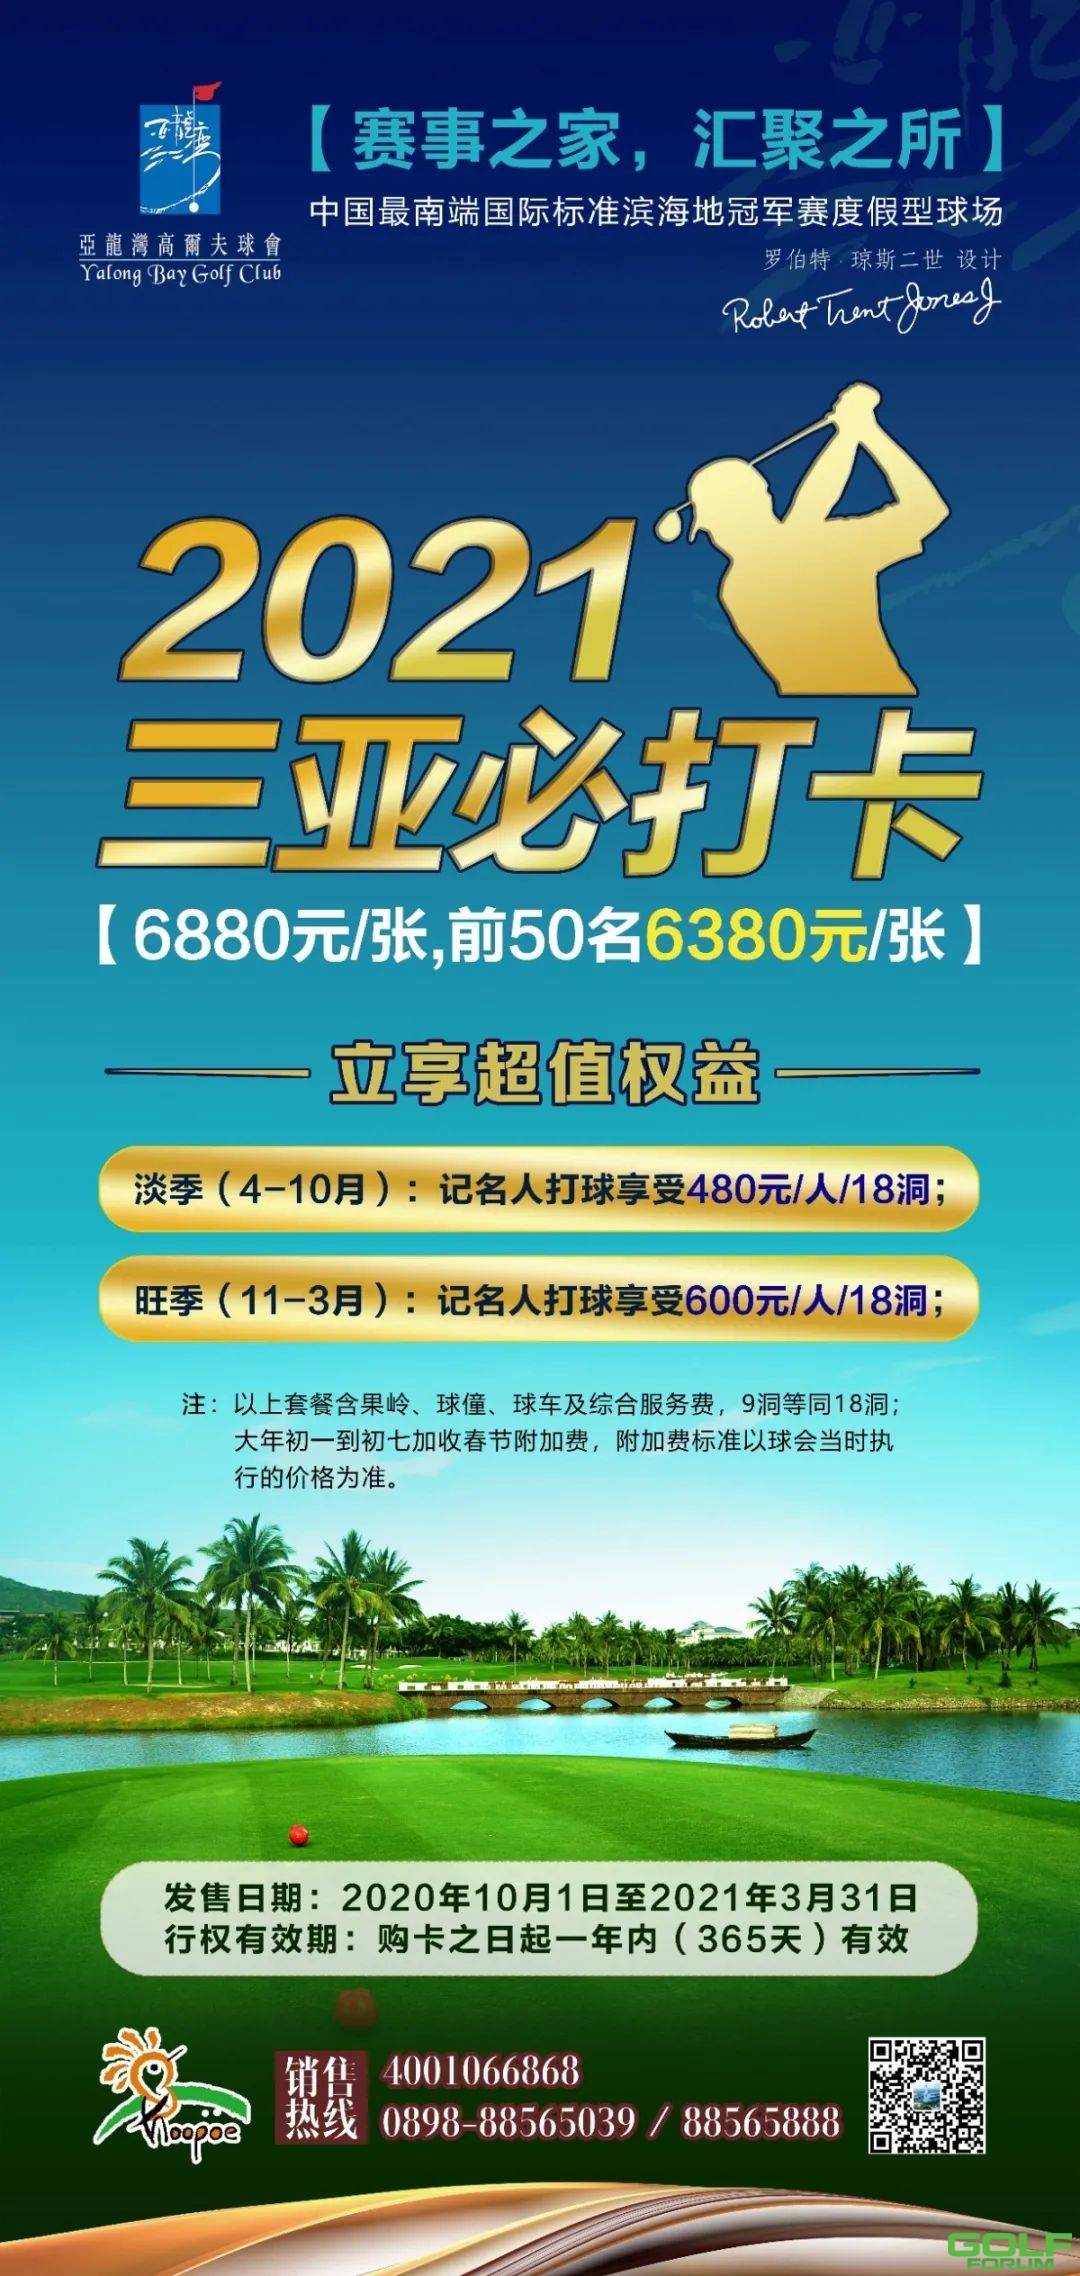 【打球必备】亚龙湾高尔夫球会2021“三亚必打卡”限量发售 ...